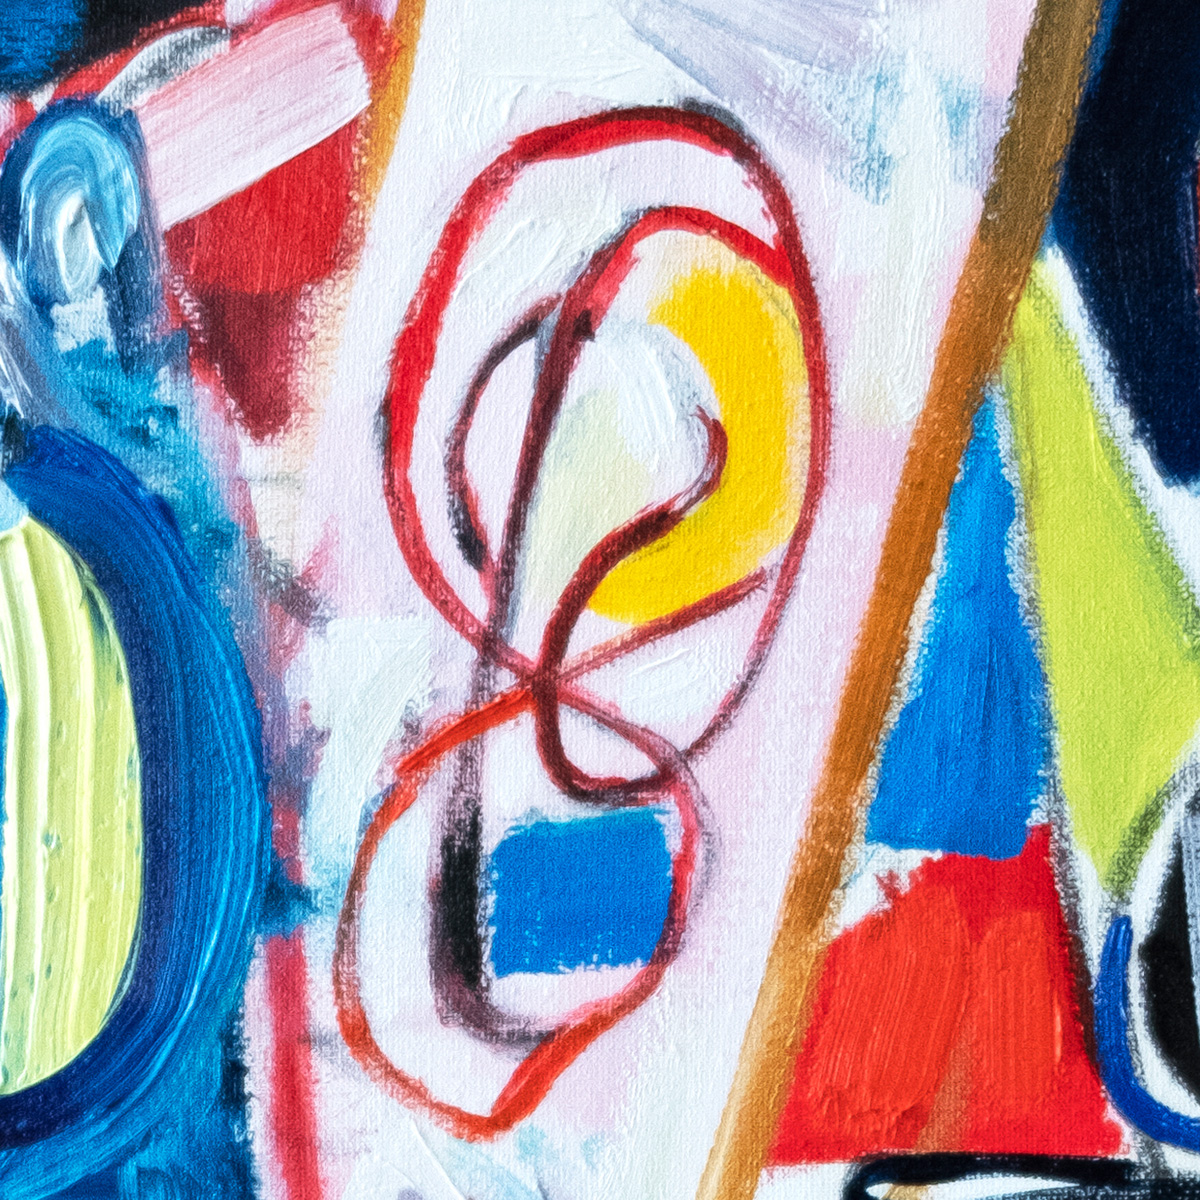 M. Cieśla: "Abstraktion, Künstler im Studio", Original/Unikat, expressionistisches Ölgemälde